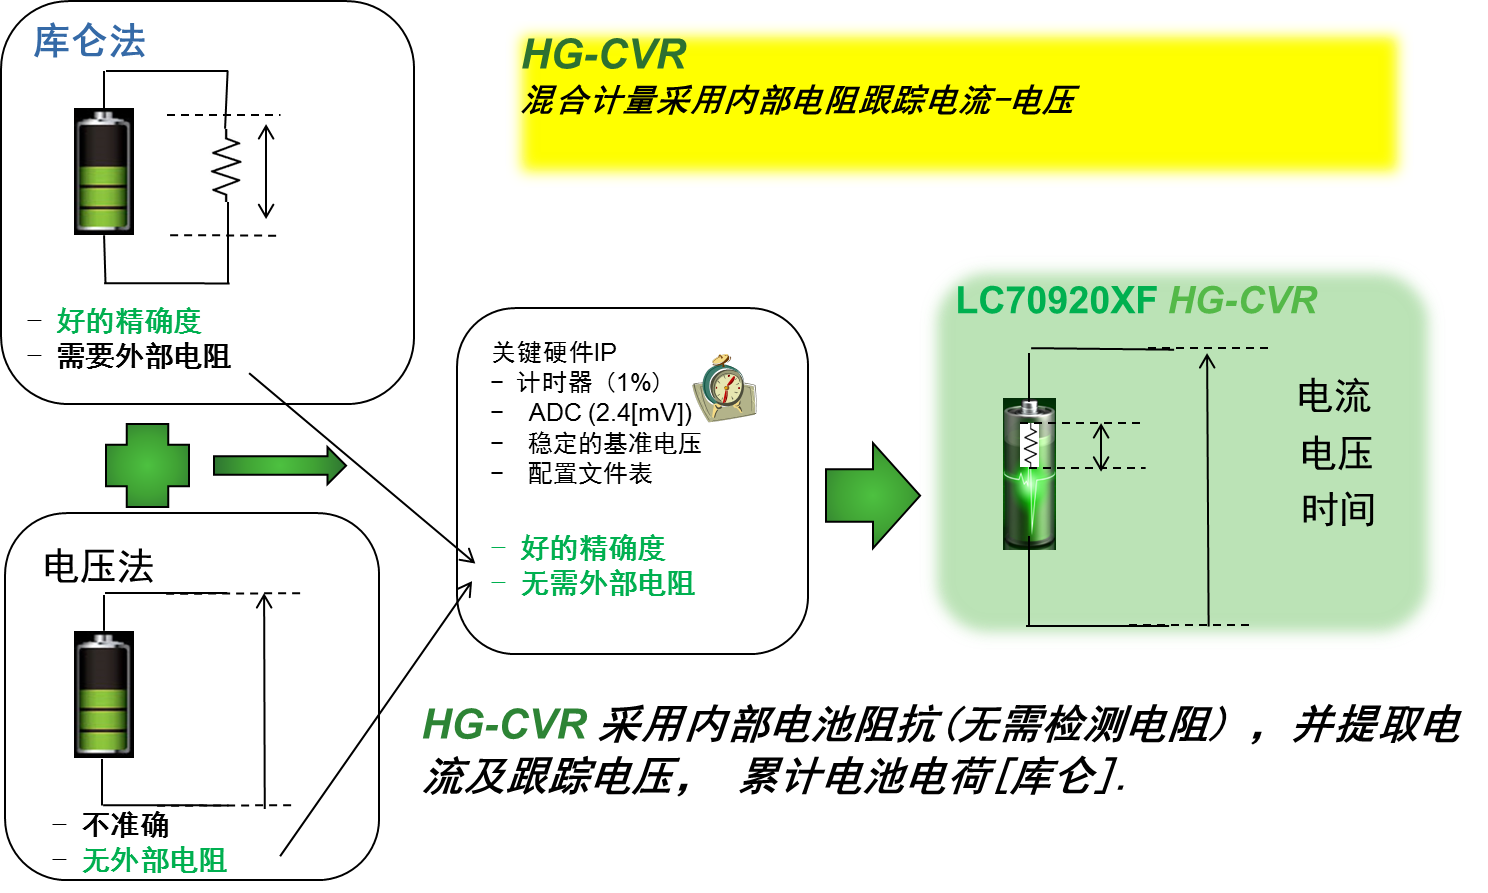 “图2：安森美半导体专利的HG-CVR法”